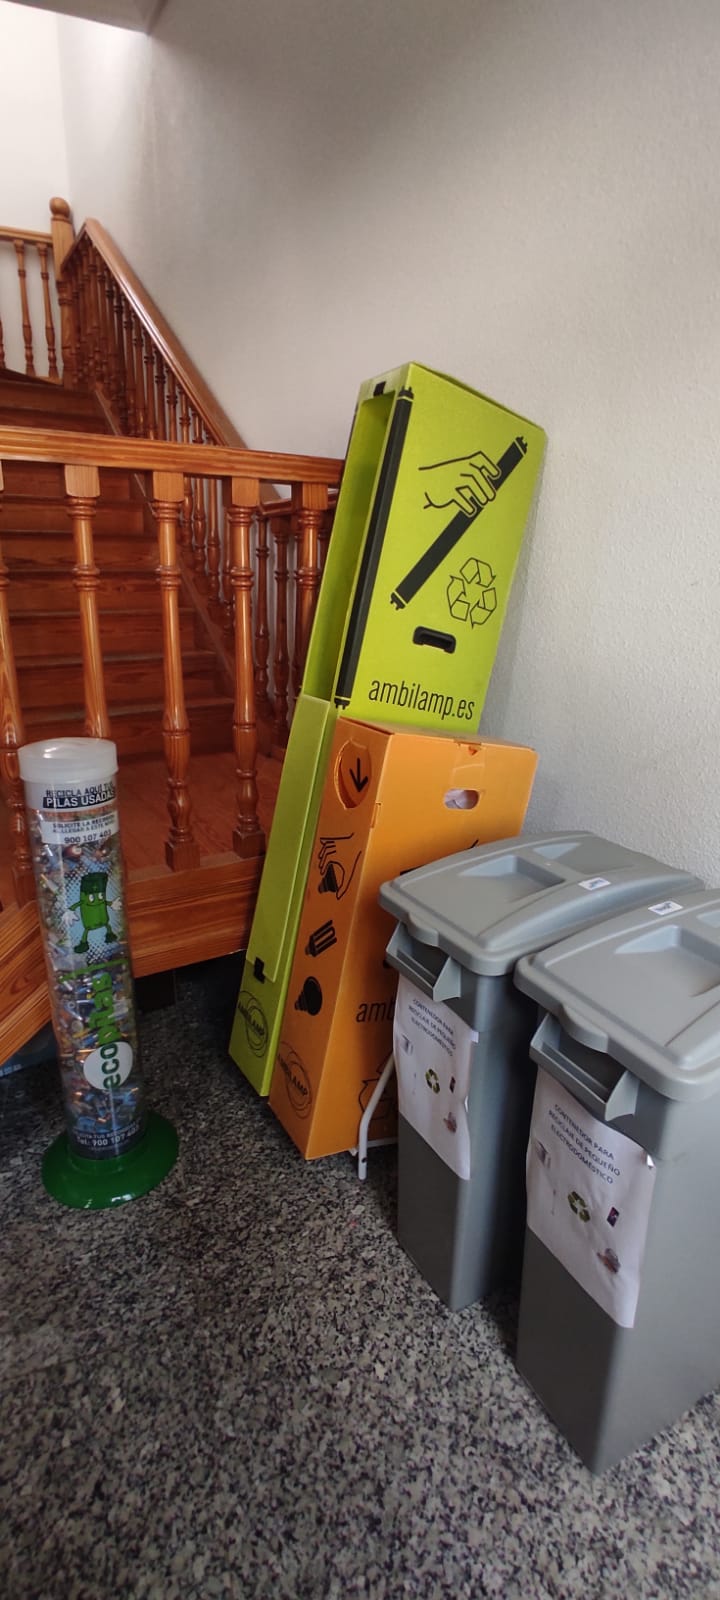 Espacio con contenedores para reciclado.